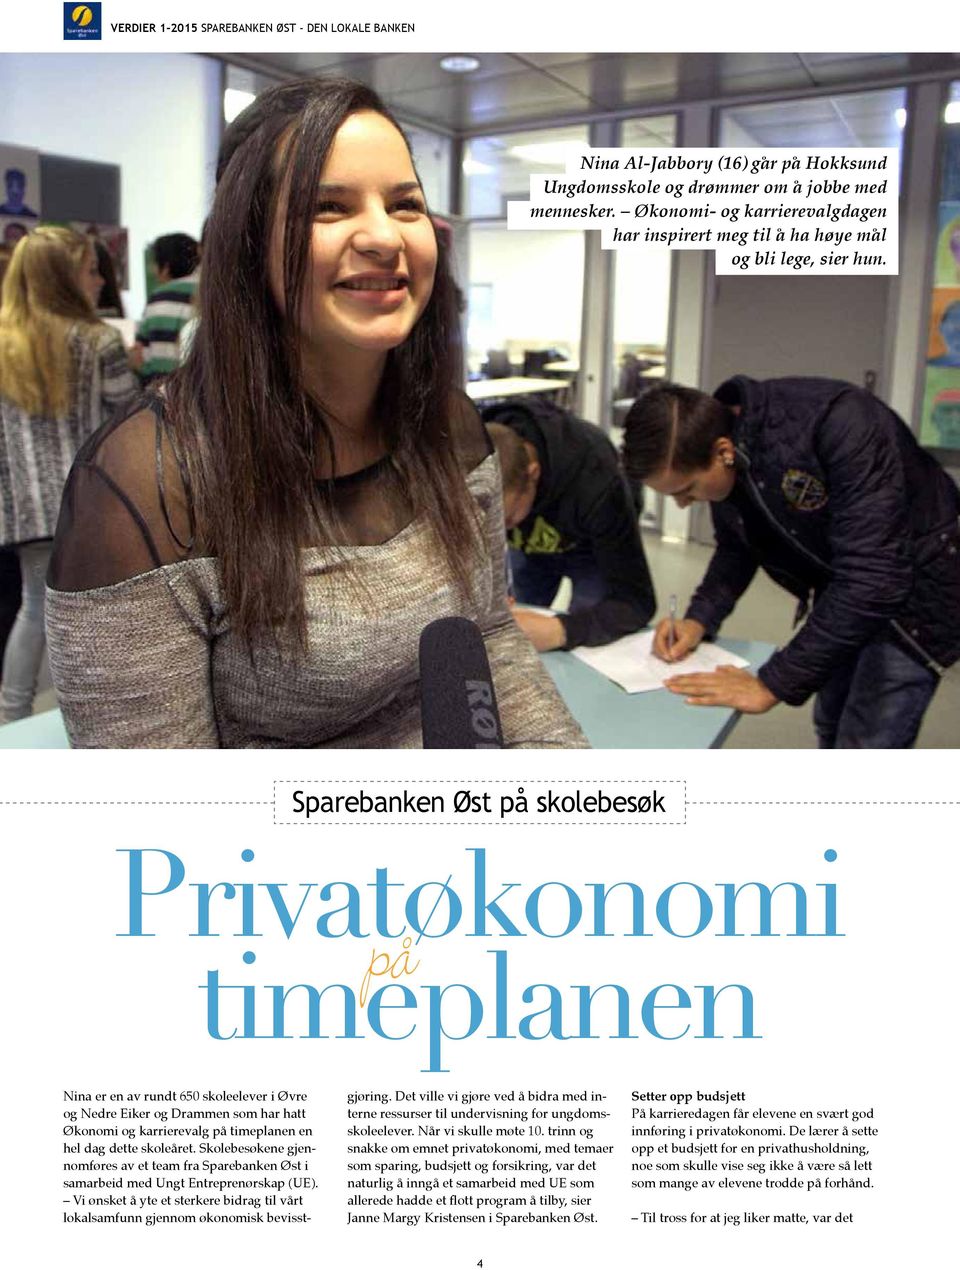 Sparebanken Øst på skolebesøk Privatøkonomi timeplanen på Nina er en av rundt 650 skoleelever i Øvre og Nedre Eiker og Drammen som har hatt Økonomi og karrierevalg på timeplanen en hel dag dette